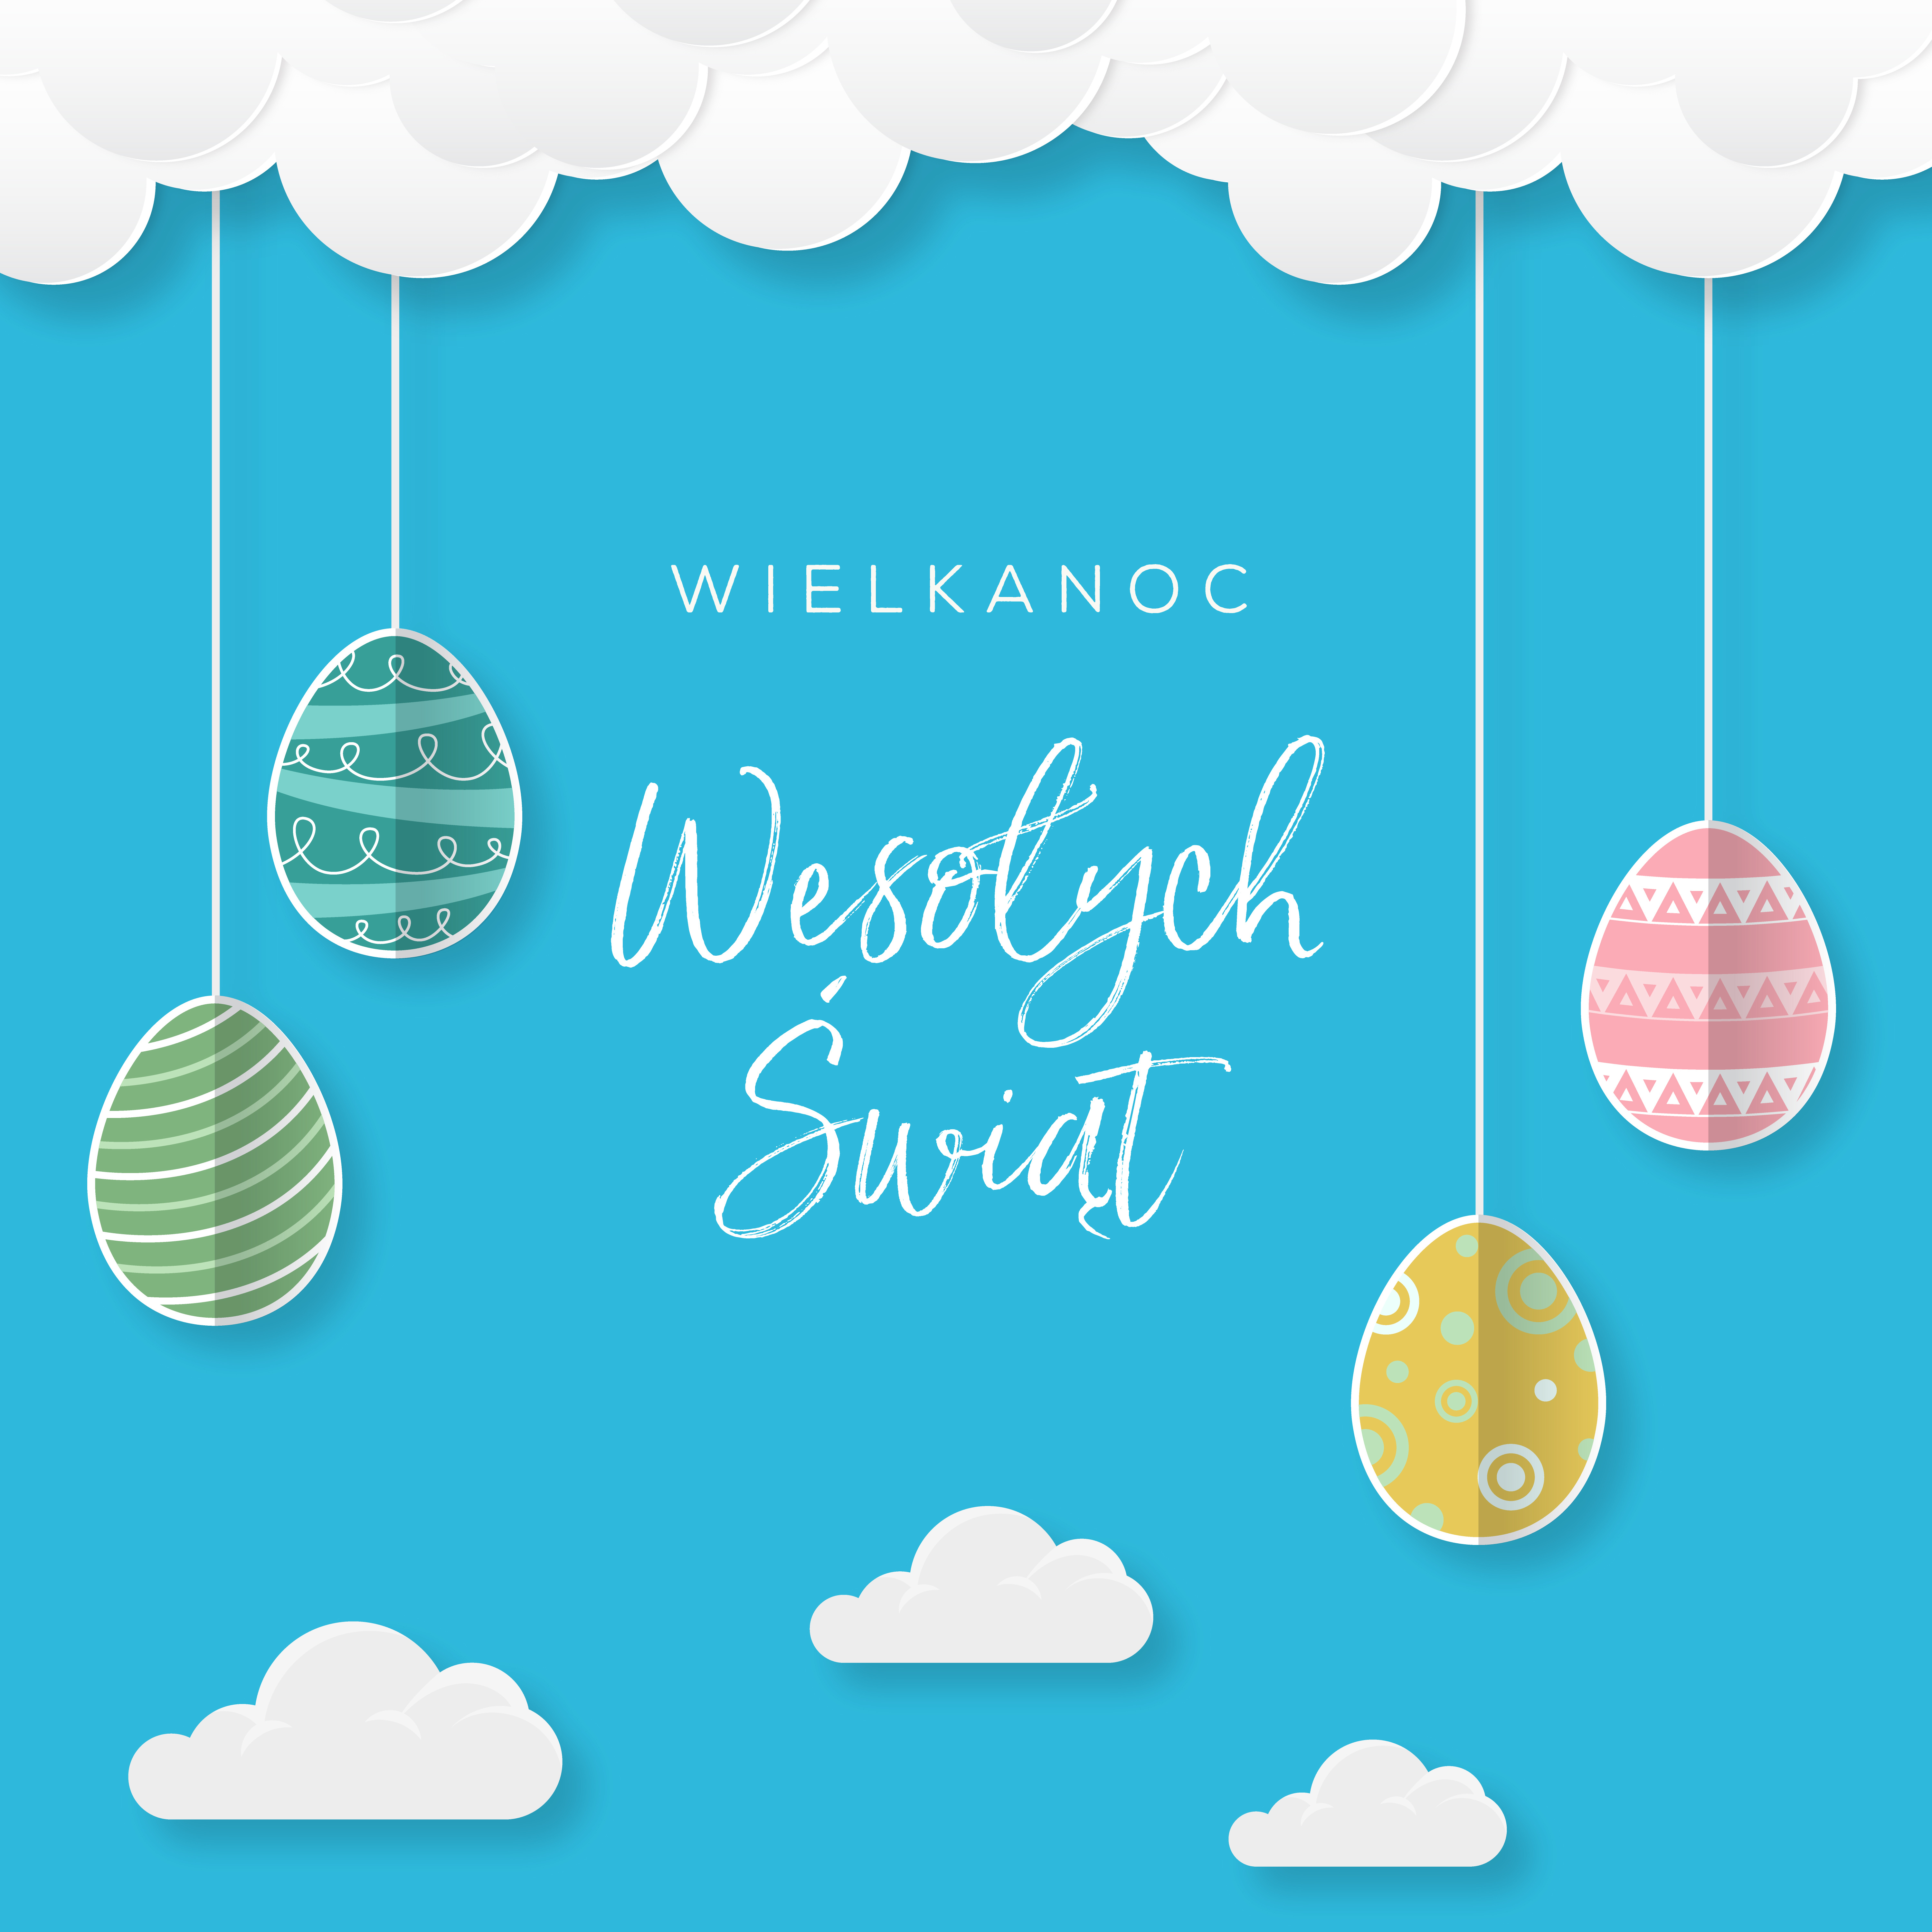 Wielkanoc Wesołych Świąt, koncepcja kartki w języku polskim z przepięknymi kolorowymi jajkami wielkanocnymi, które zwisają na sznurku z chmur na niebie